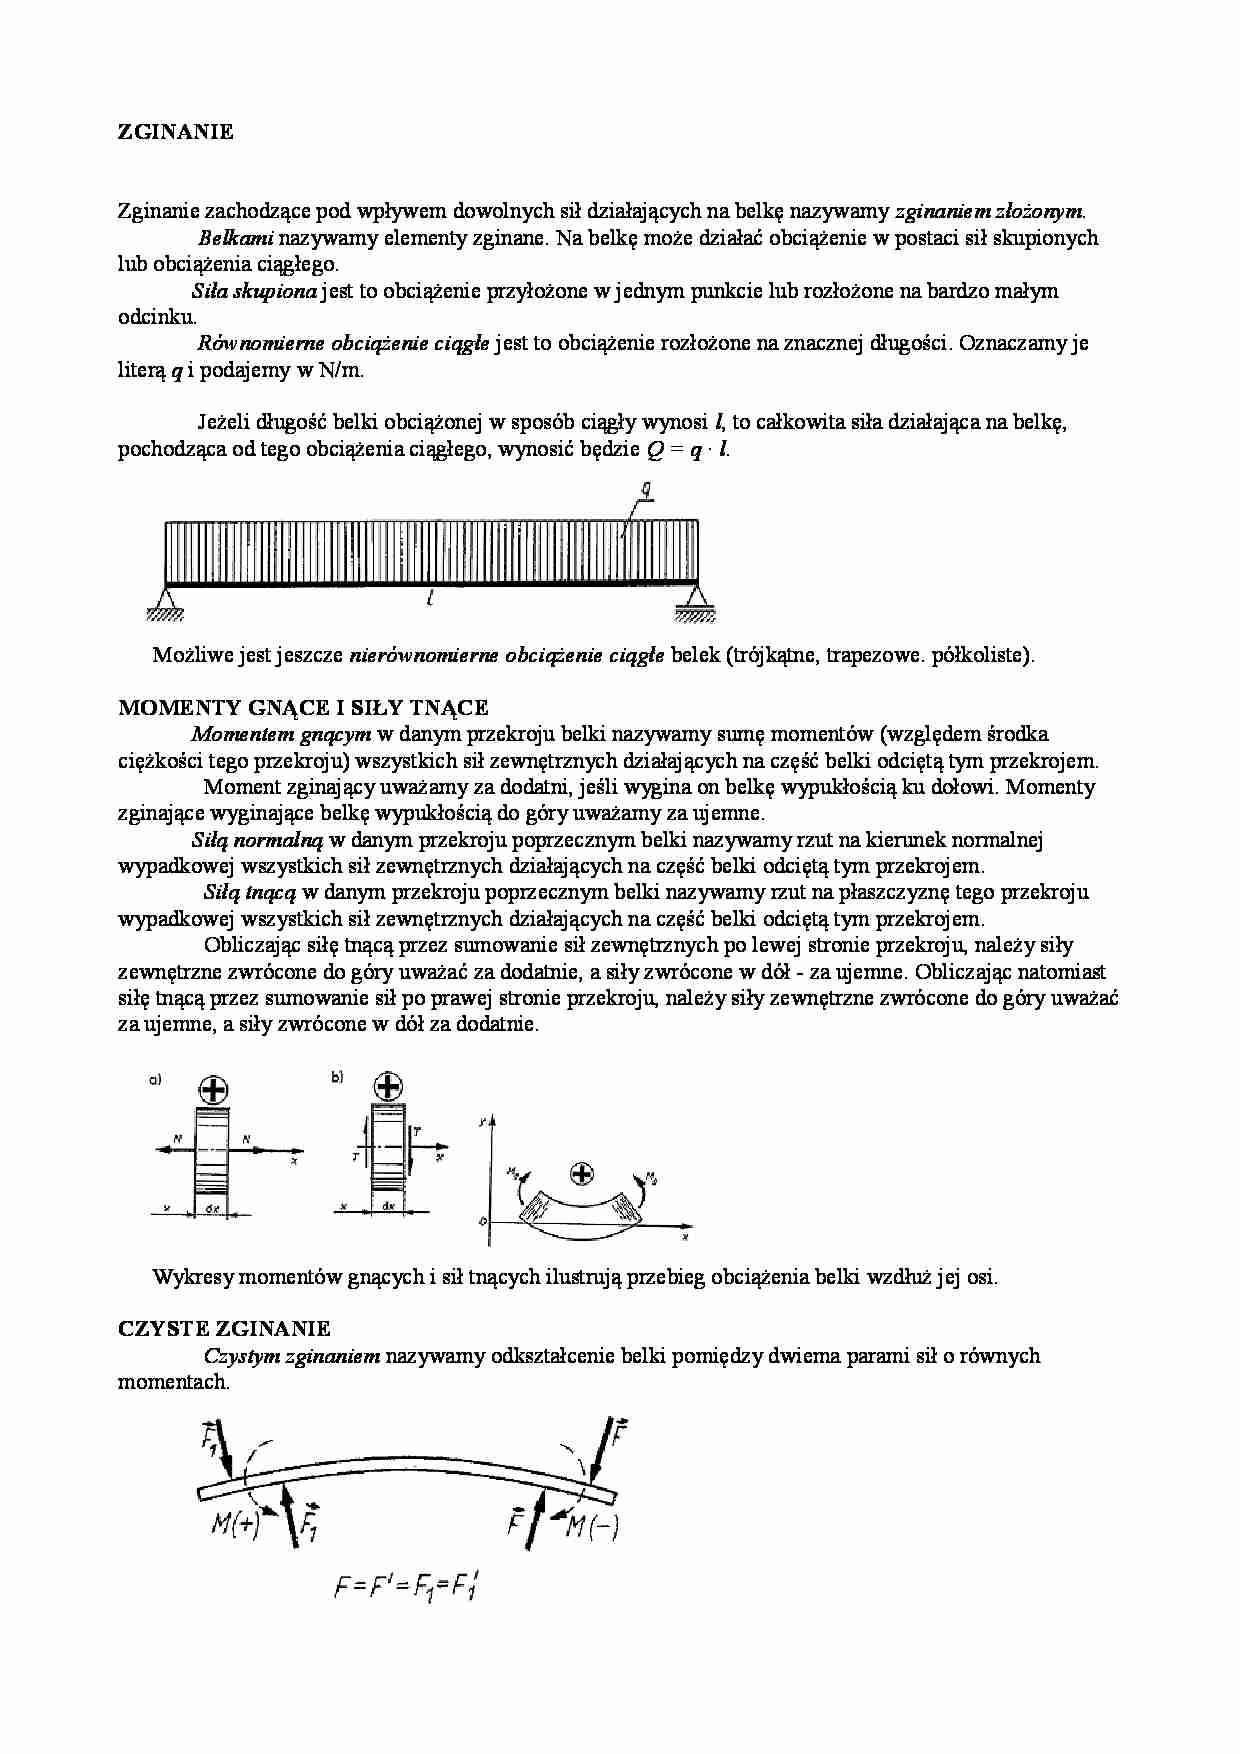 Mechanika techniczna - zginanie - belki - strona 1